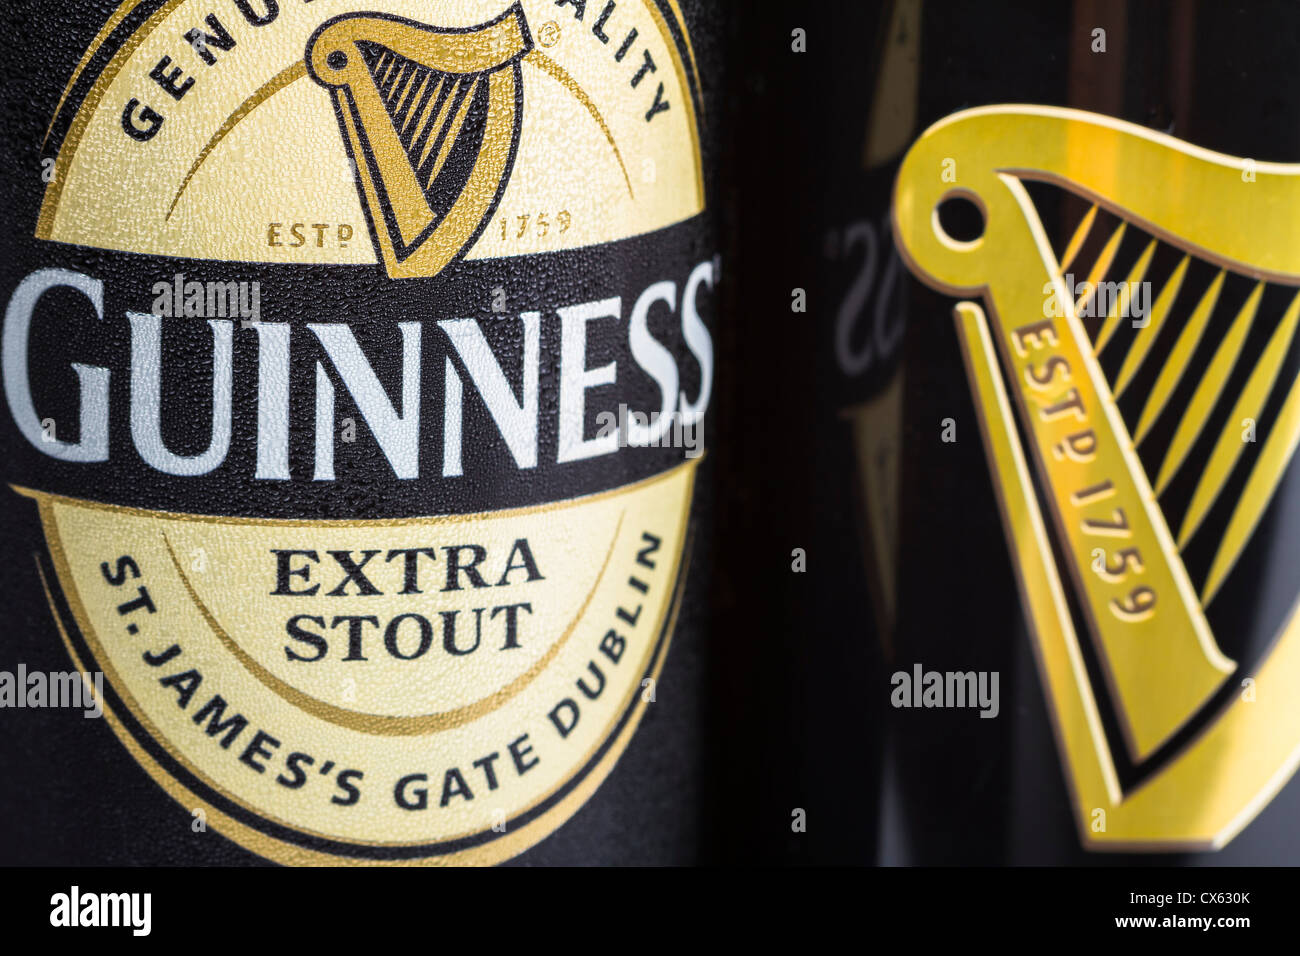 Dublin, Irland - 12. September 2012. Dies ist eine Studioaufnahme Produkt einer Dose Guinness stout neben eine andere Dose Guinness D Stockfoto